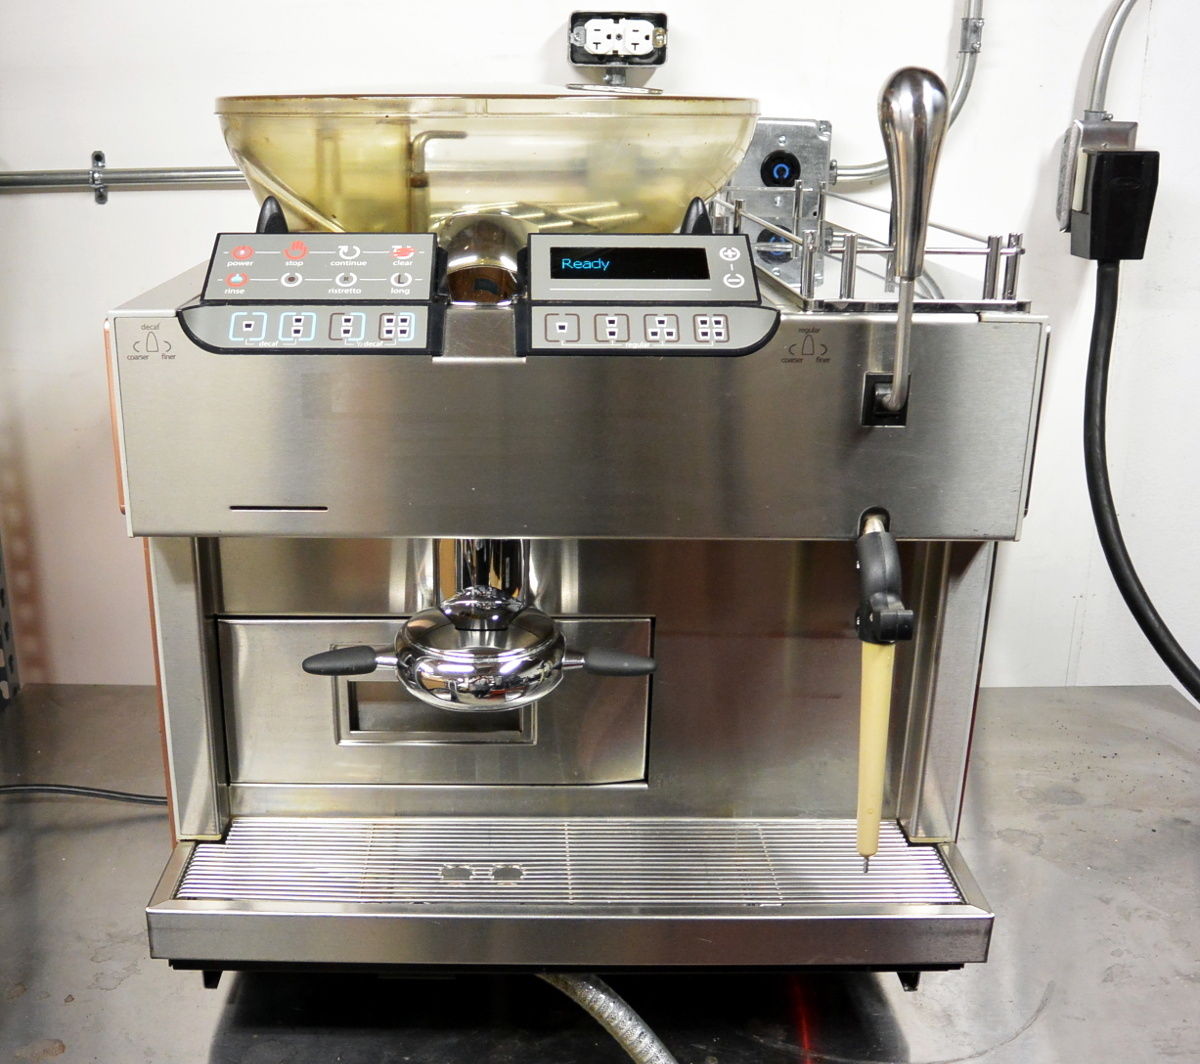 Espresso machine - Wikipedia